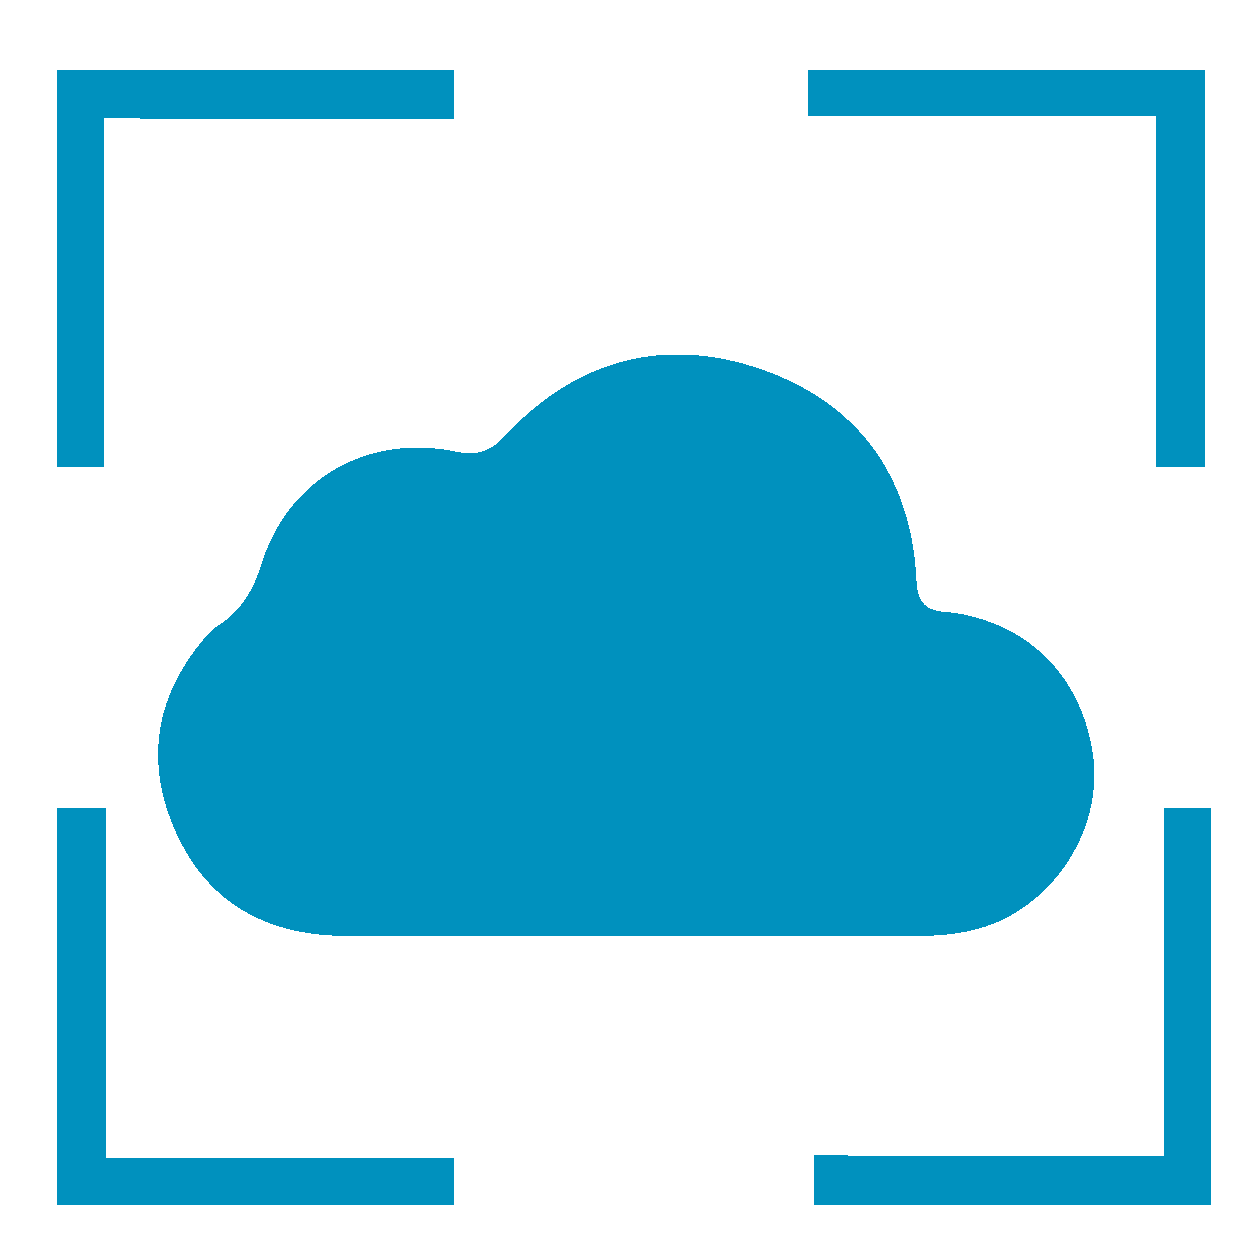 Cloud Lösungen als Unterstützung bei verschiedenen Einsätzen